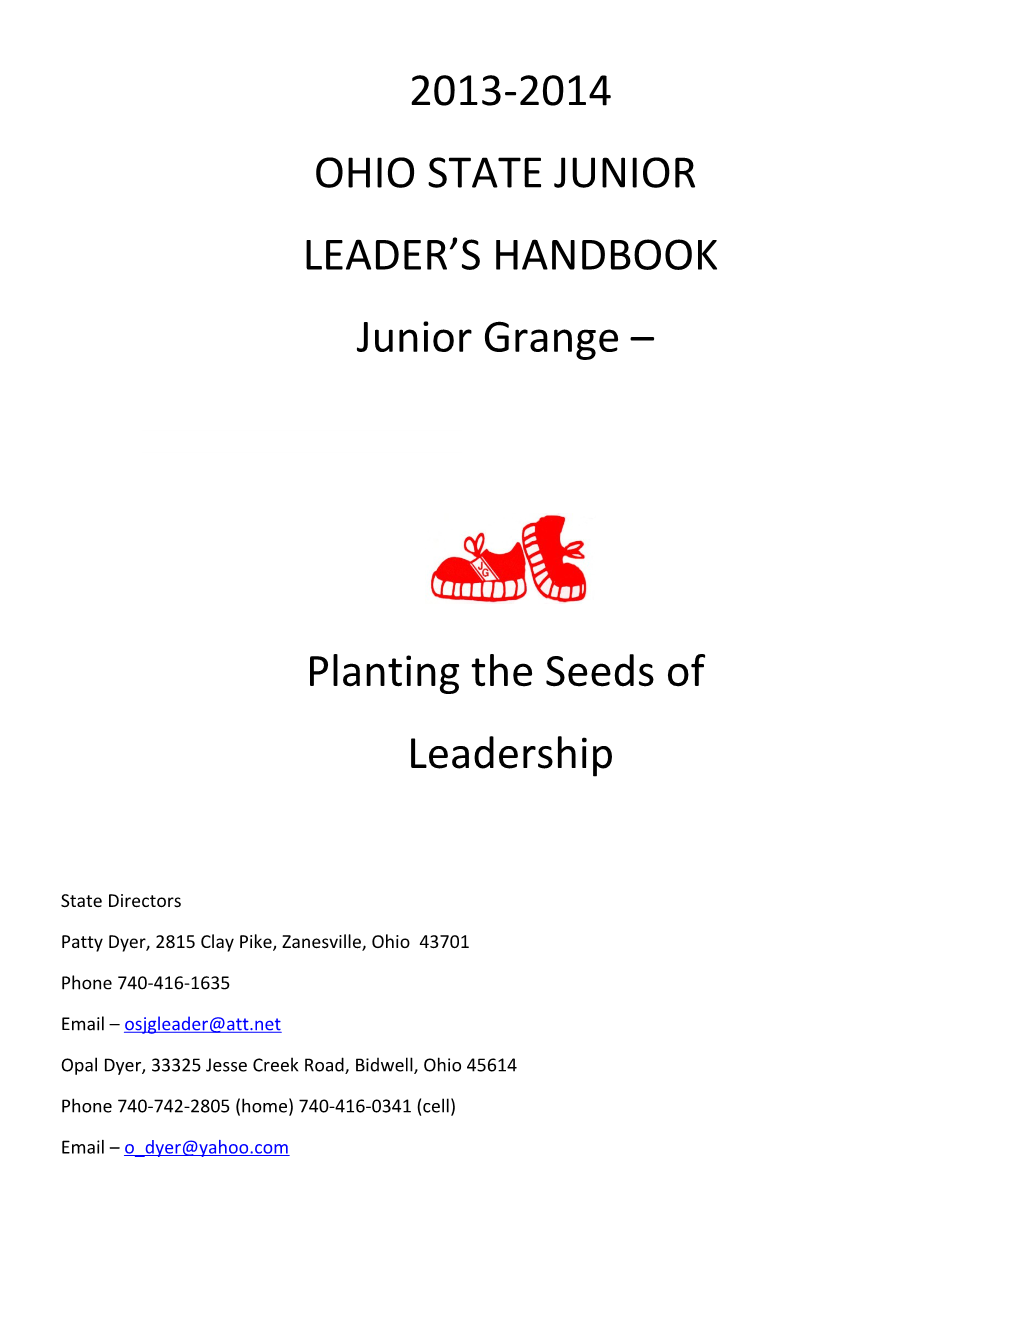 Ohio State Junior